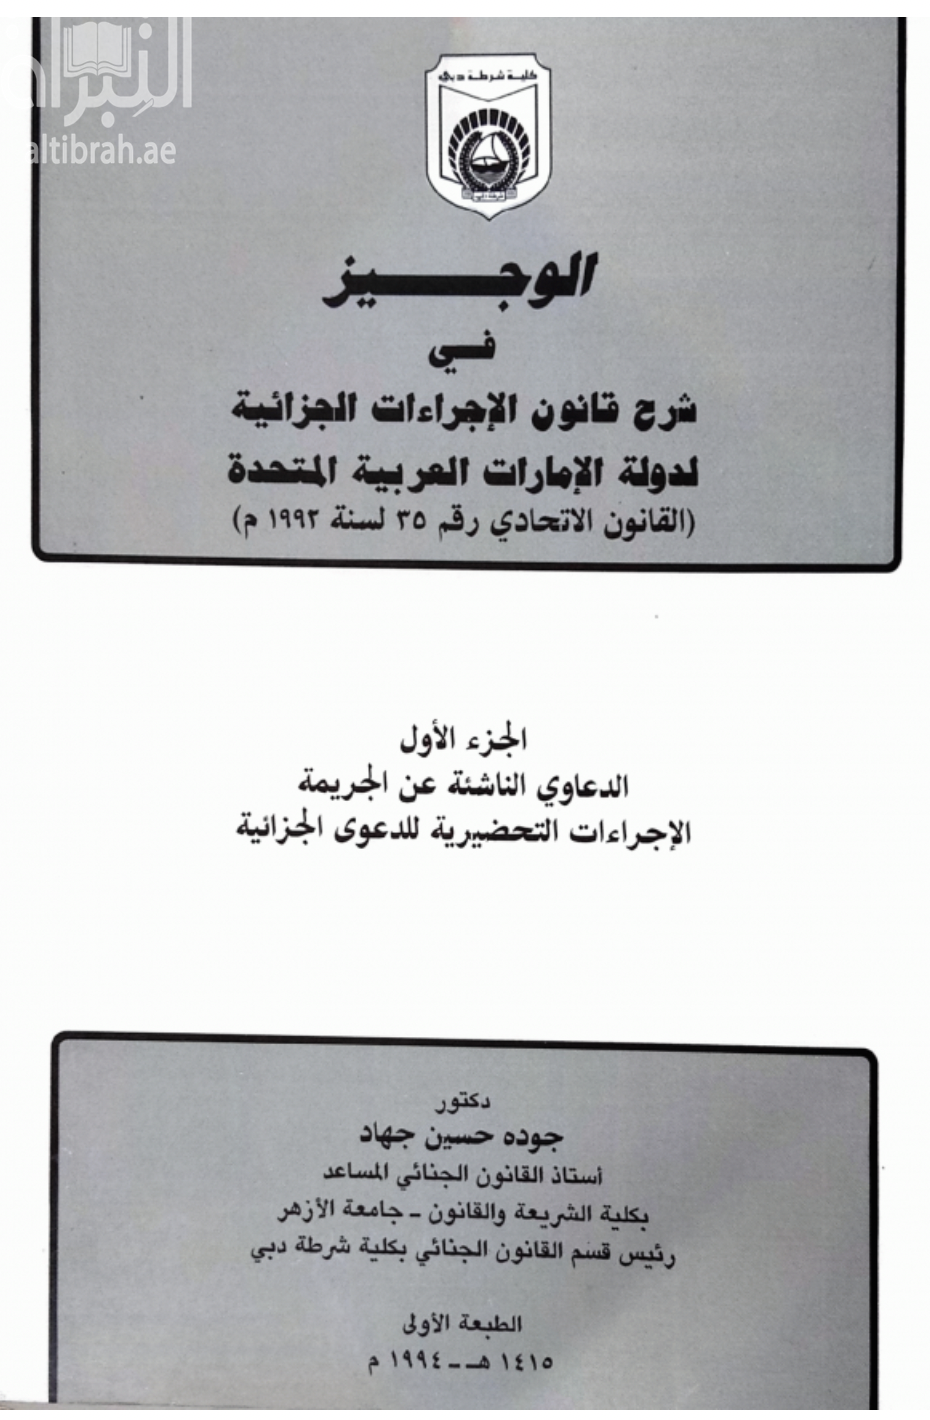 الوجيز في شرح قانون الاجراءات الجزائية لدولة الإمارات العربية المتحدة : القانون الاتحادي رقم 35 لسنة 1992 م